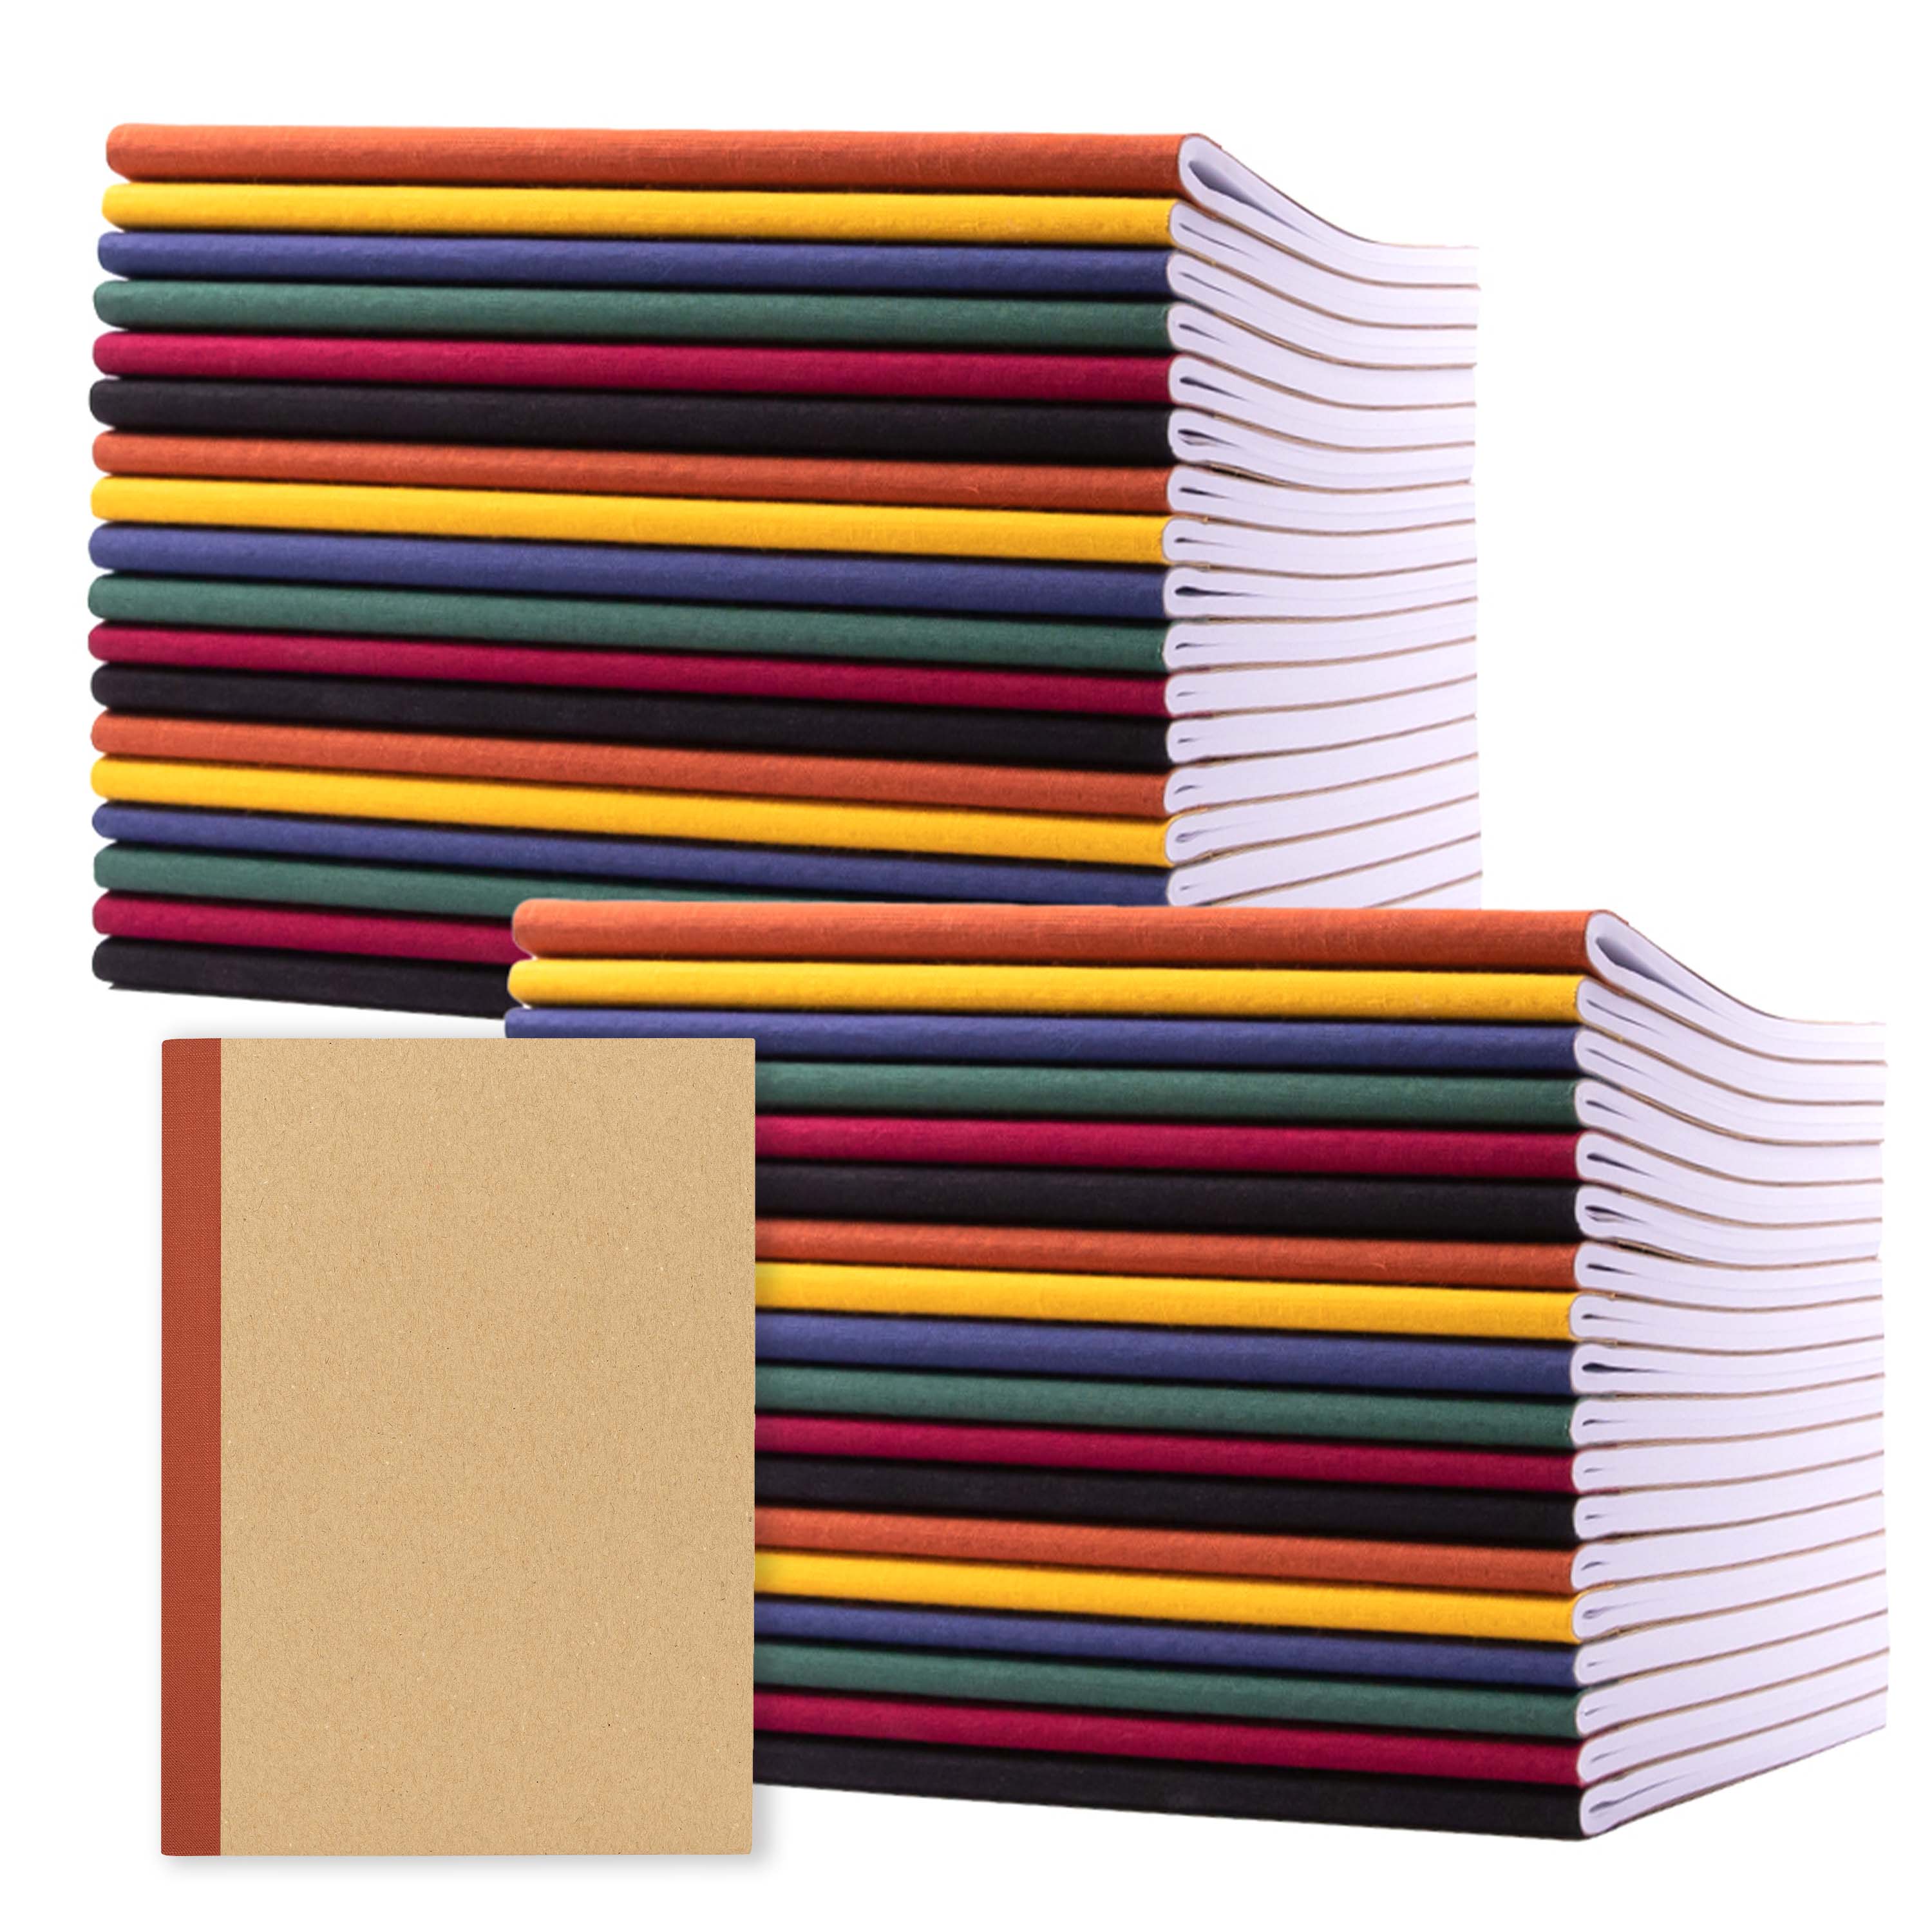 Kraft Notebook - 48-Pack Bulk Lined Notebook Journals, Travel